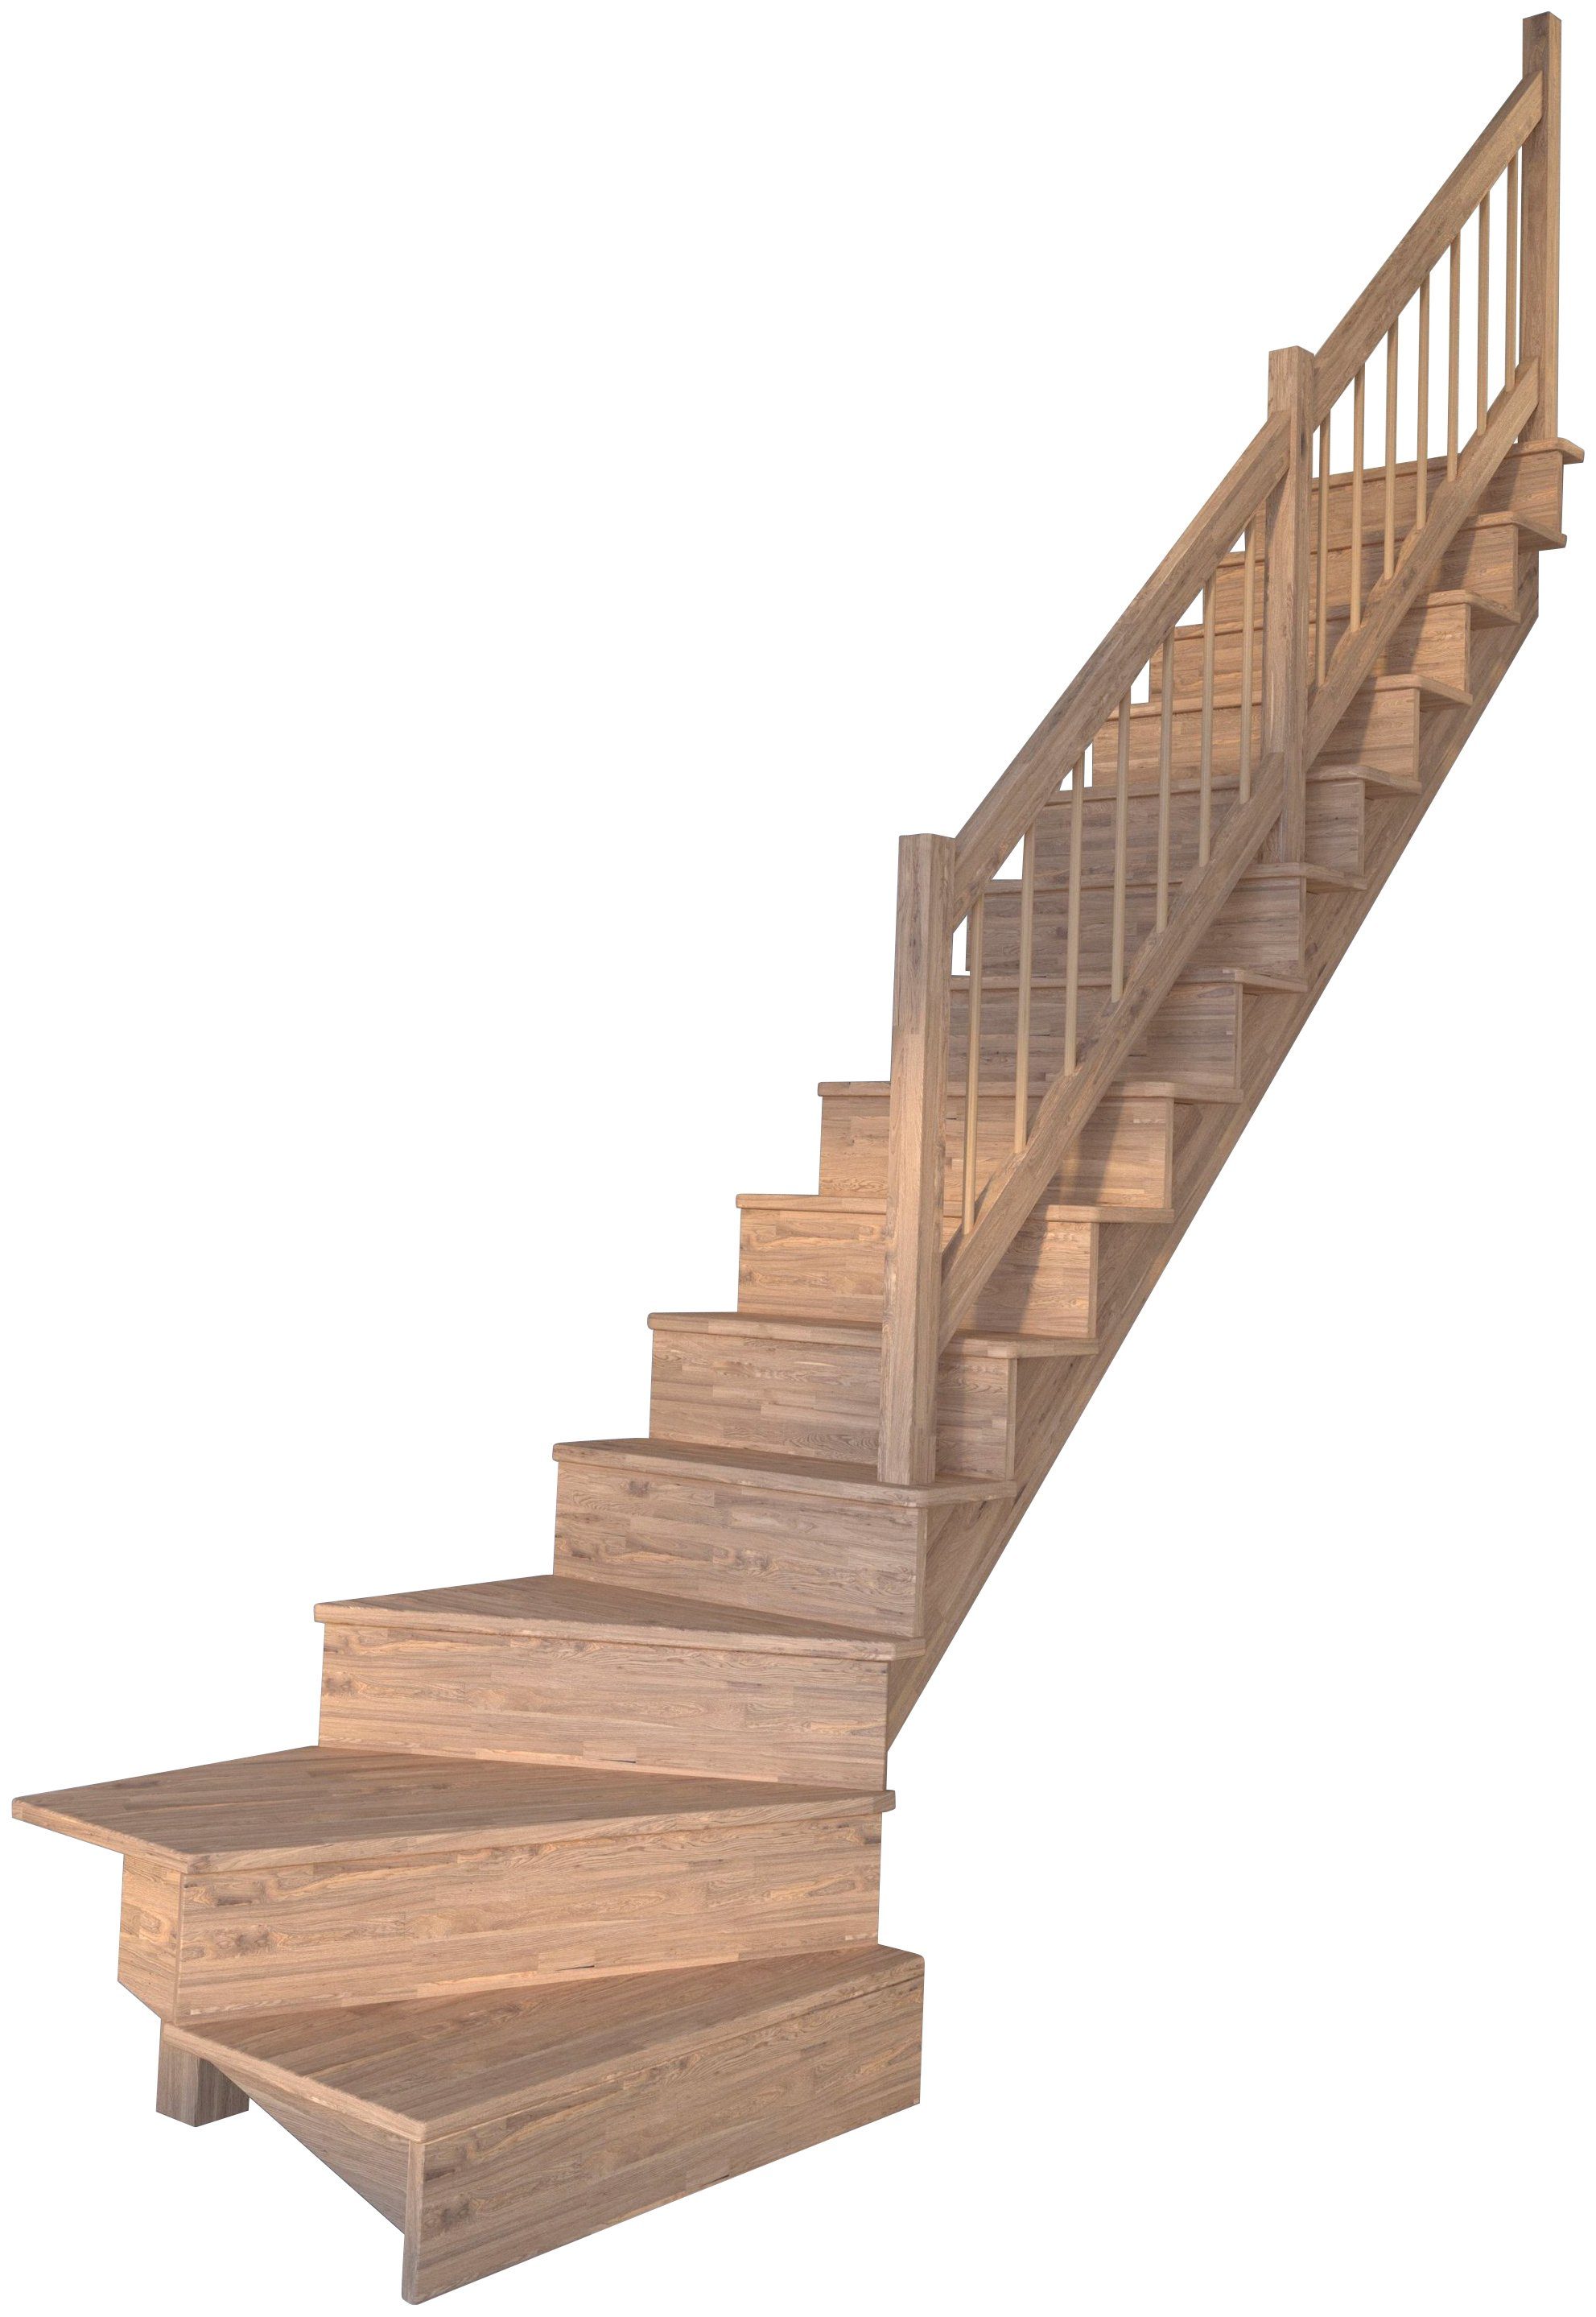 Starwood Systemtreppe Massivholz Lindos, Holz-Holz Design Geländer, für Geschosshöhen bis 300 cm, Stufen geschlossen, gewendelt Rechts, Durchgehende Wangenteile